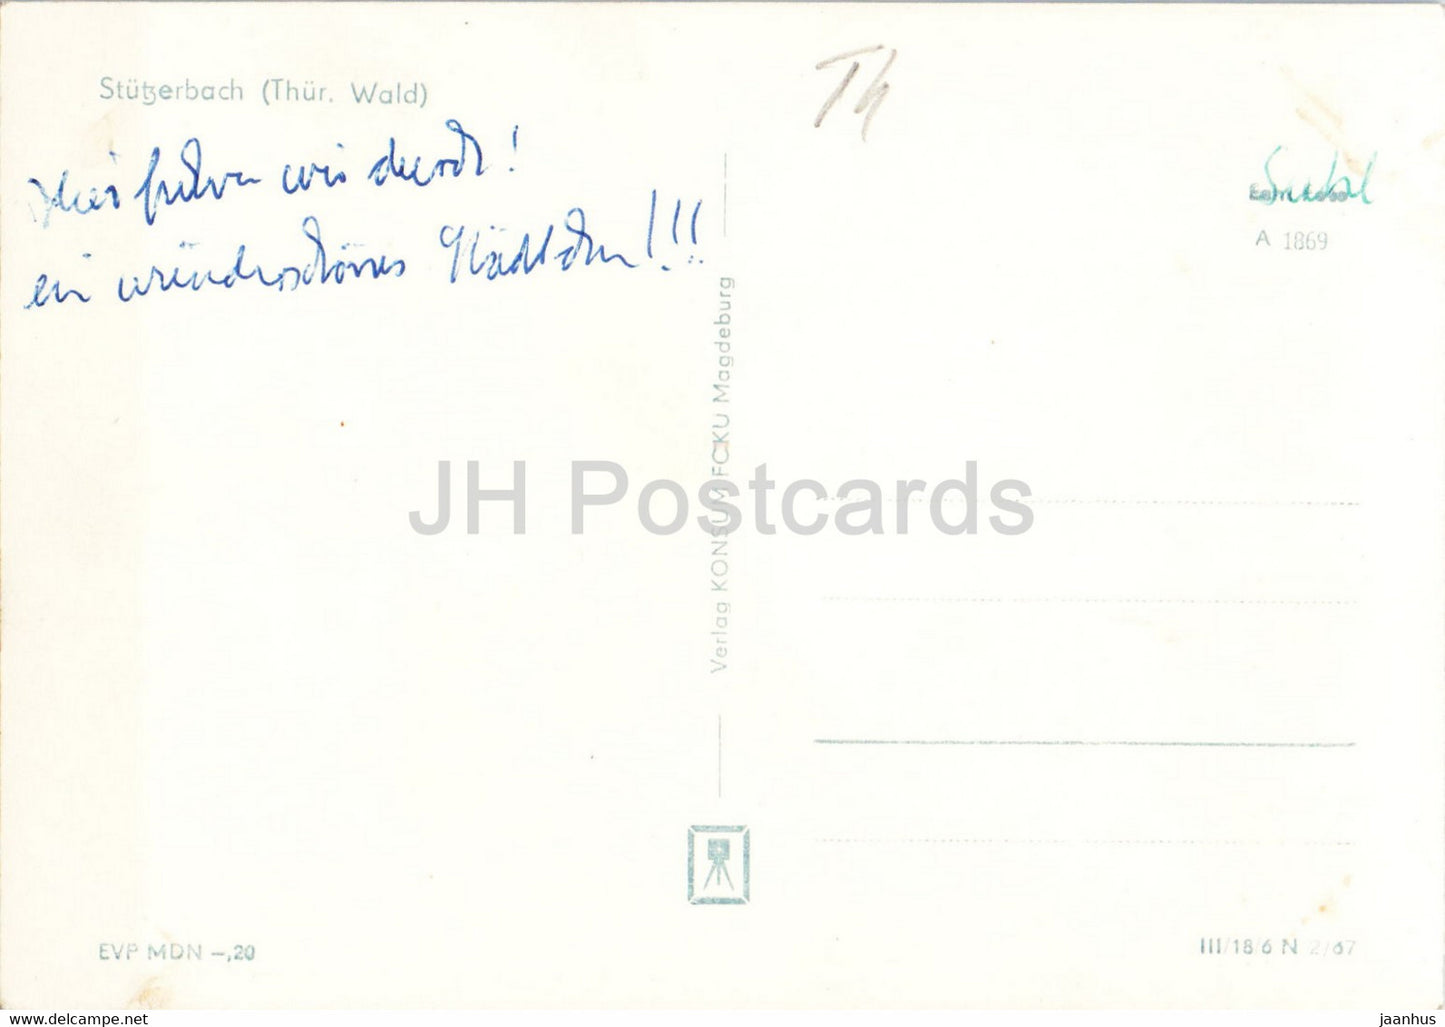 Stützerbach - Thur Wald - alte Postkarte - Deutschland DDR - gebraucht